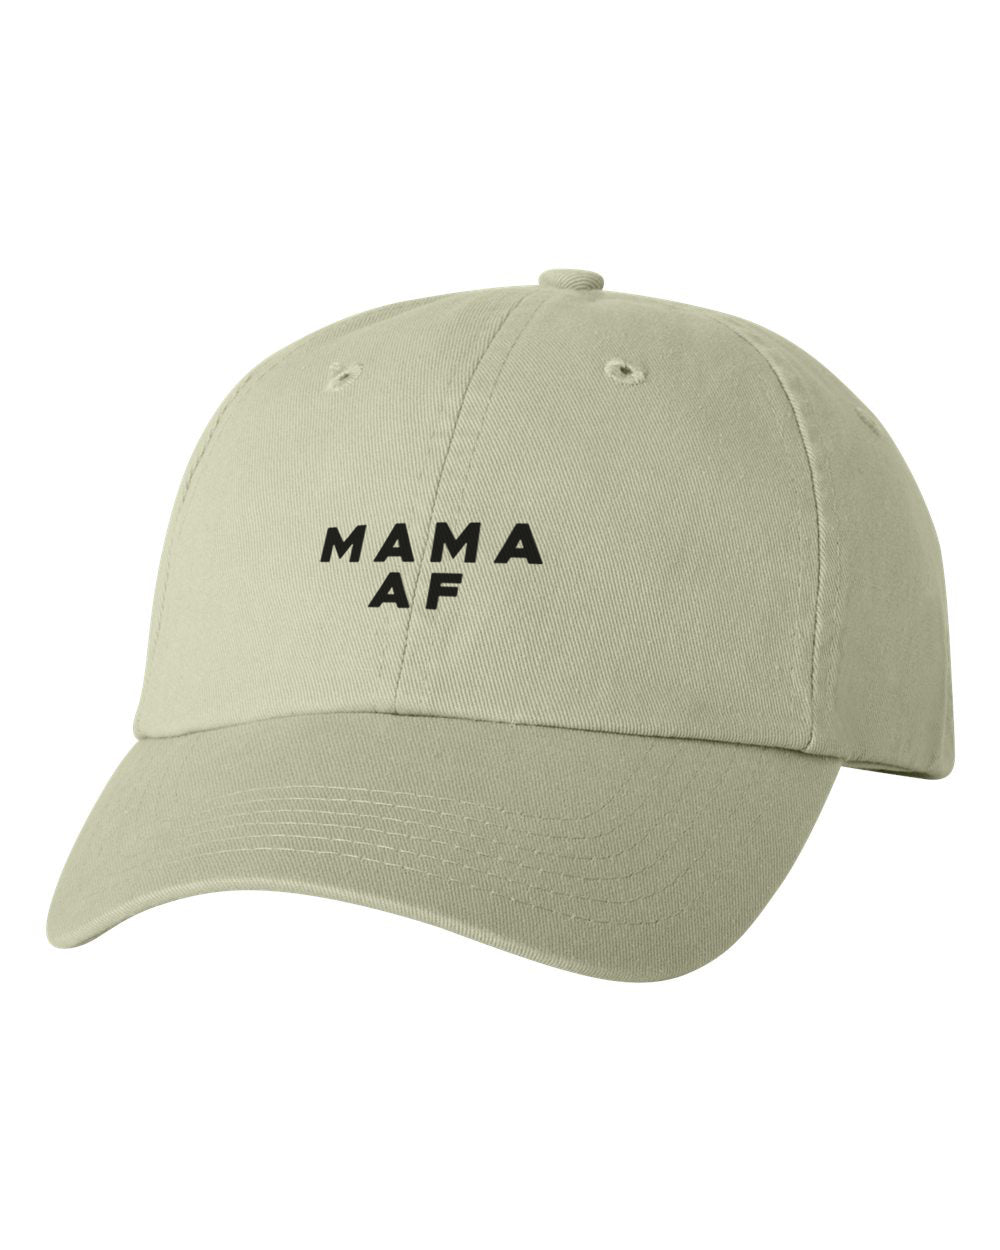 MAMA AF Stone Hat